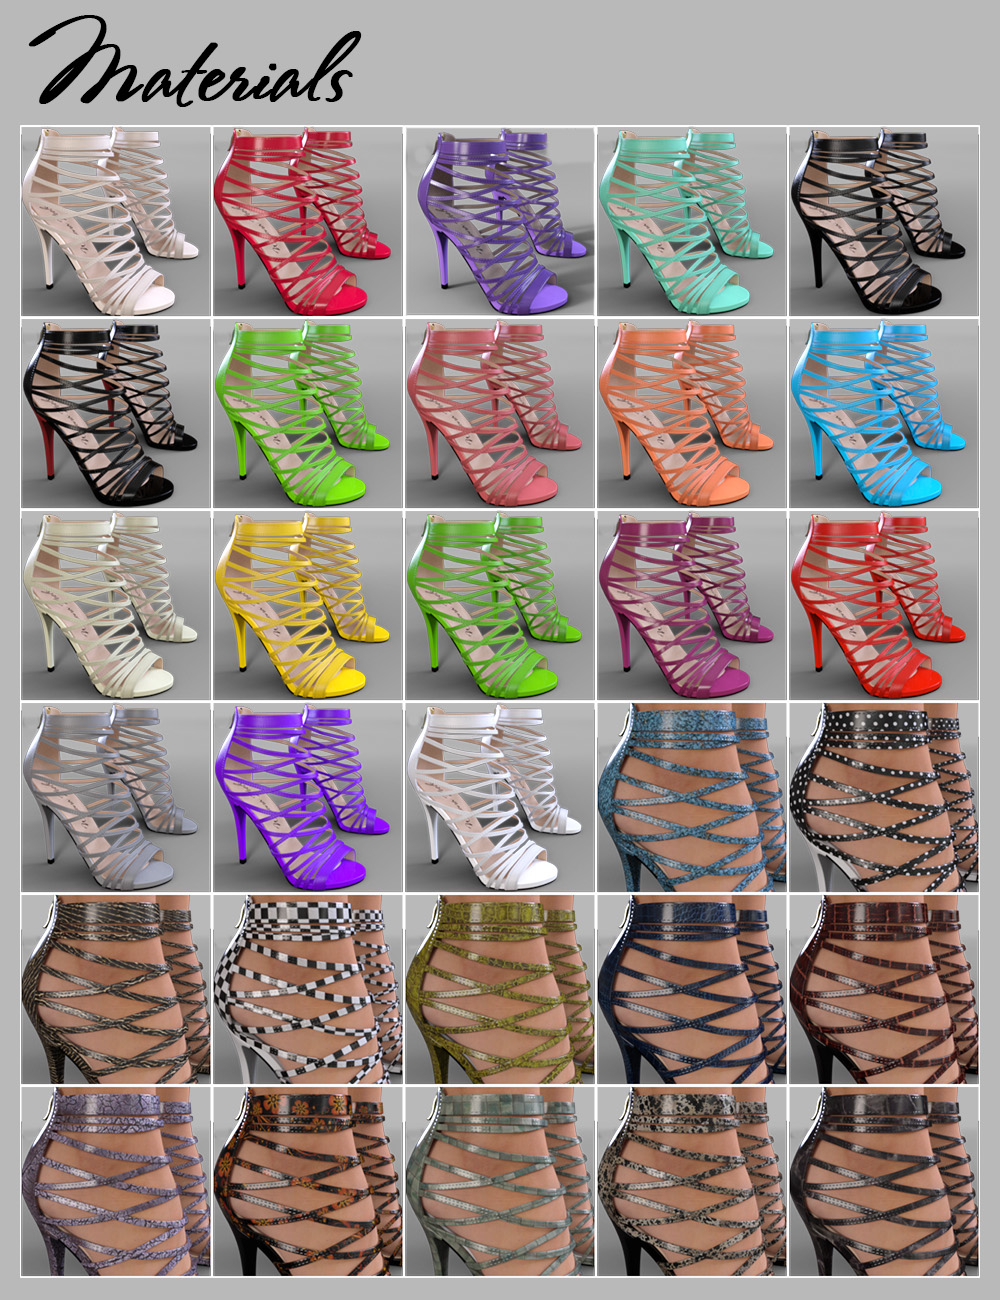 Winona Heels for Genesis 3 Female(s) by: Arryn, 3D Models by Daz 3D